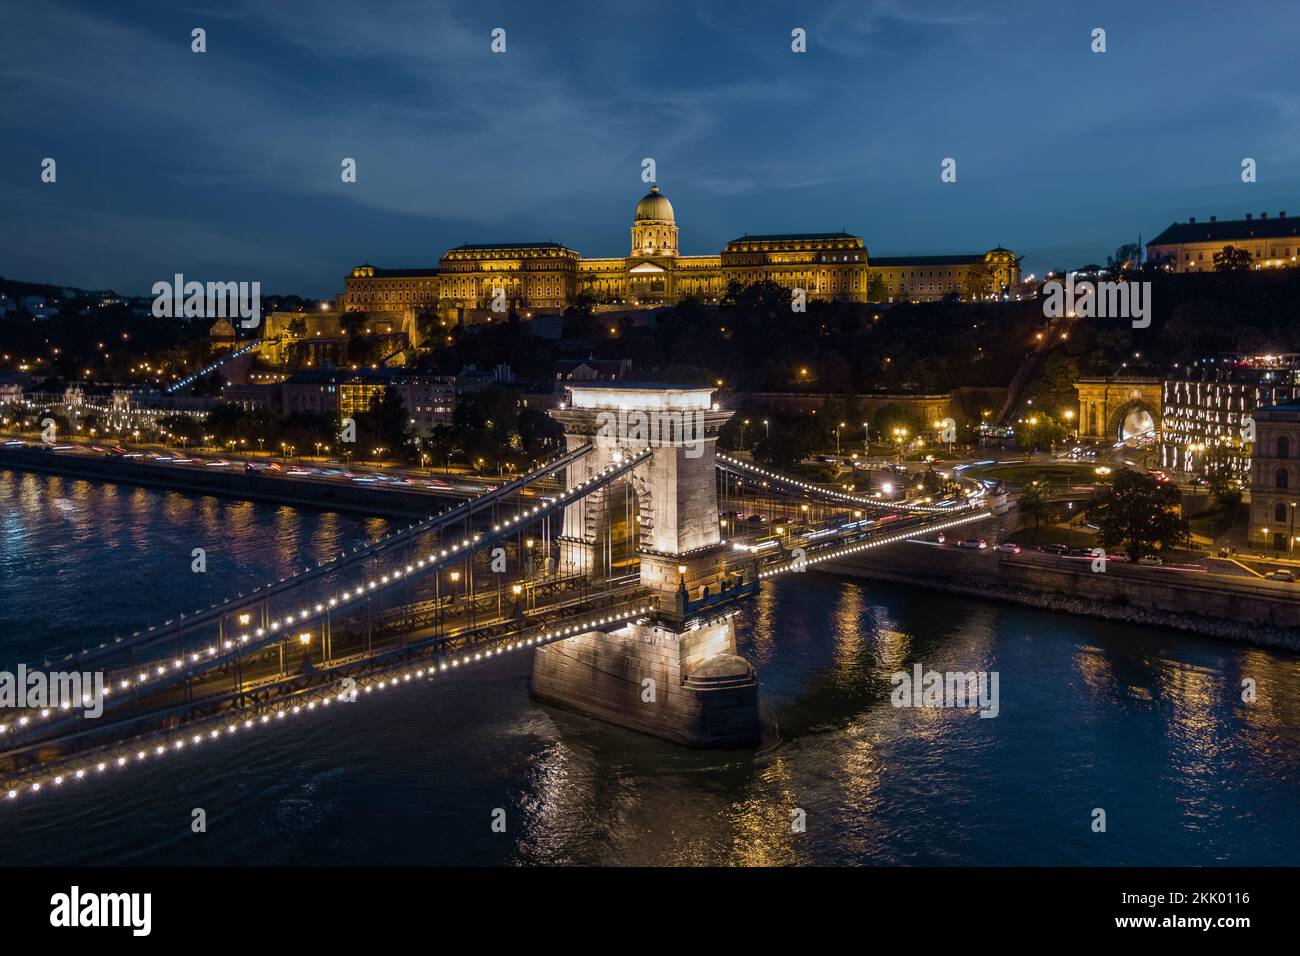 Vista aérea del Palacio Buda y el Puente de las Cadenas Szechenyi sobre el río Danubio al anochecer en Budapest, Hungría. Foto de stock